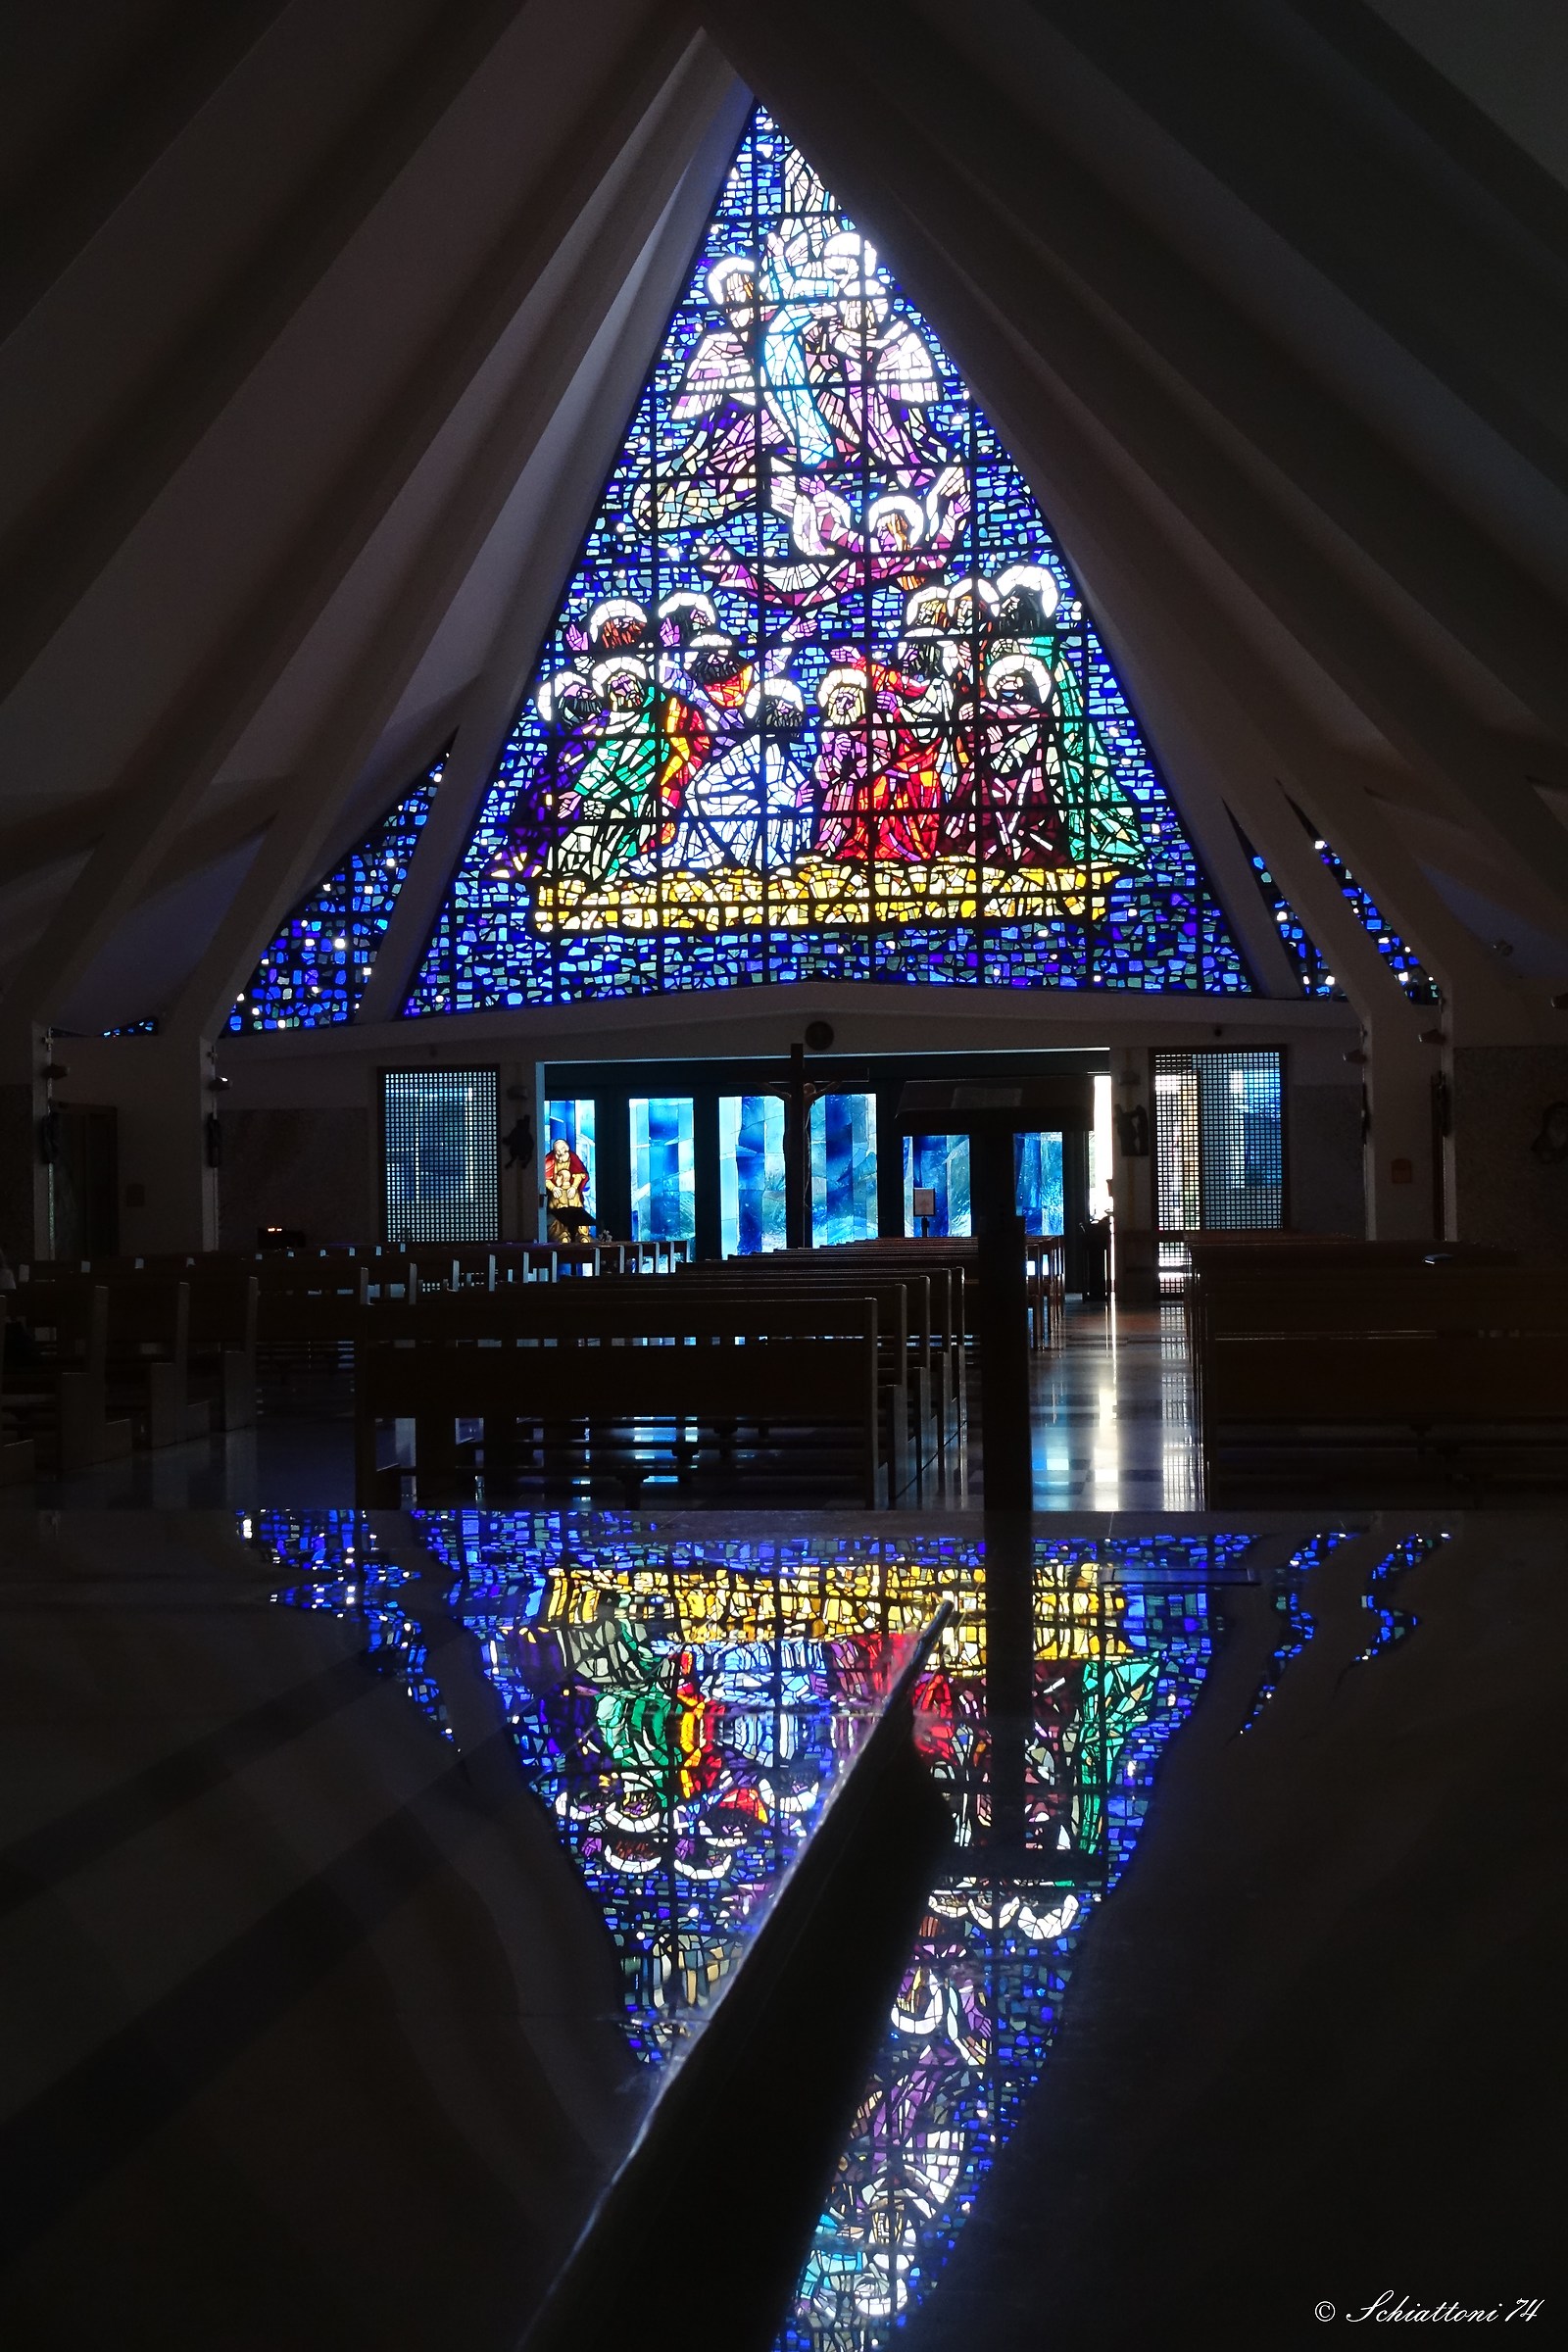 Una chiesa dentro una nave con una vela a mosaico...